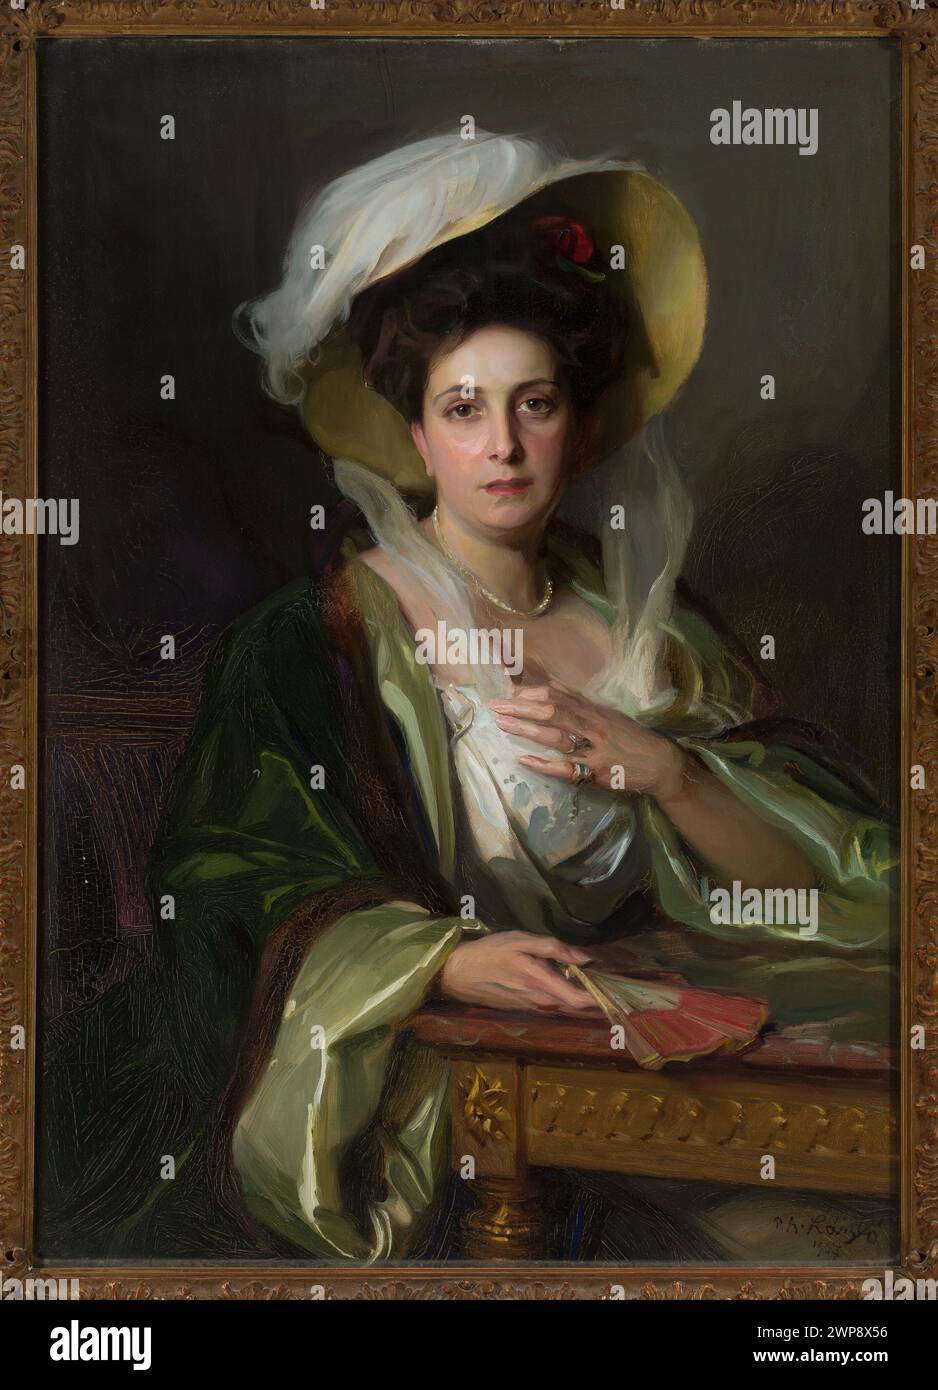 Nous donnerons un portrait dans un grand chapeau ; László, Fülöp (1869-1937) ; 1907 (1907-00-00-1907-00-00) ; femmes, peinture hongroise, portraits, portraits de femmes Banque D'Images